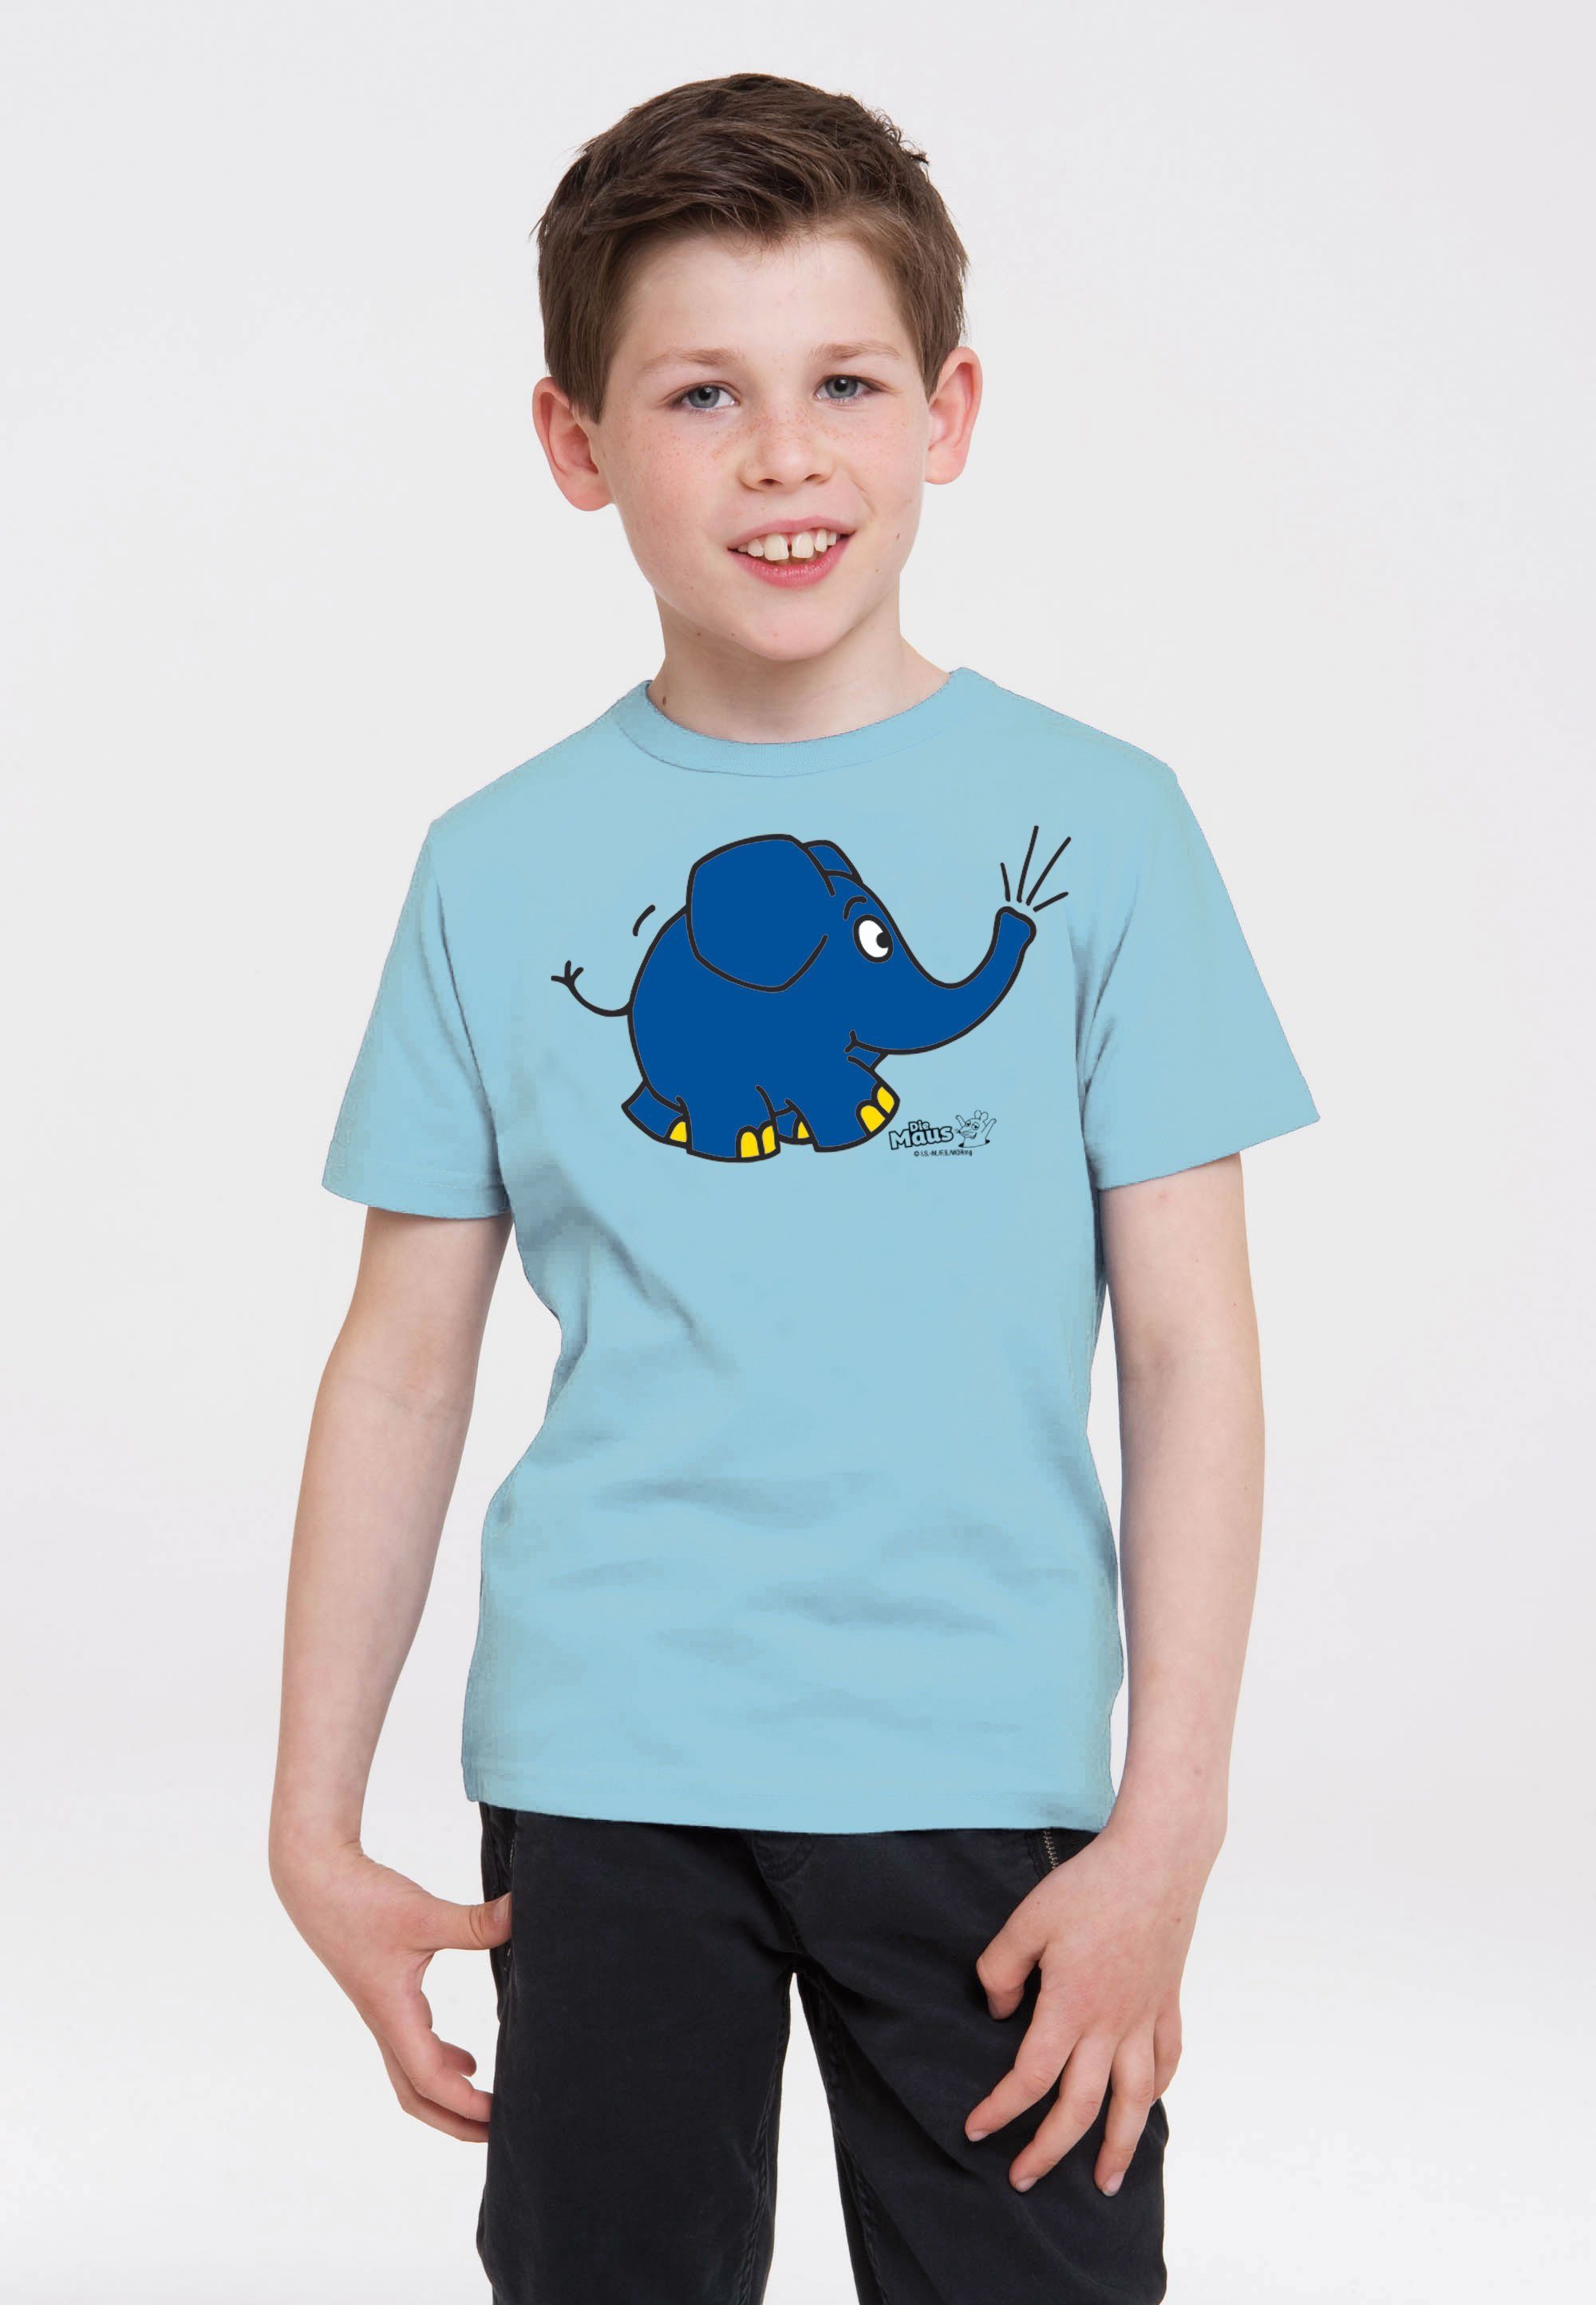 LOGOSHIRT T-Shirt Sendung mit - mit Elefant Print coolem Maus der Törö